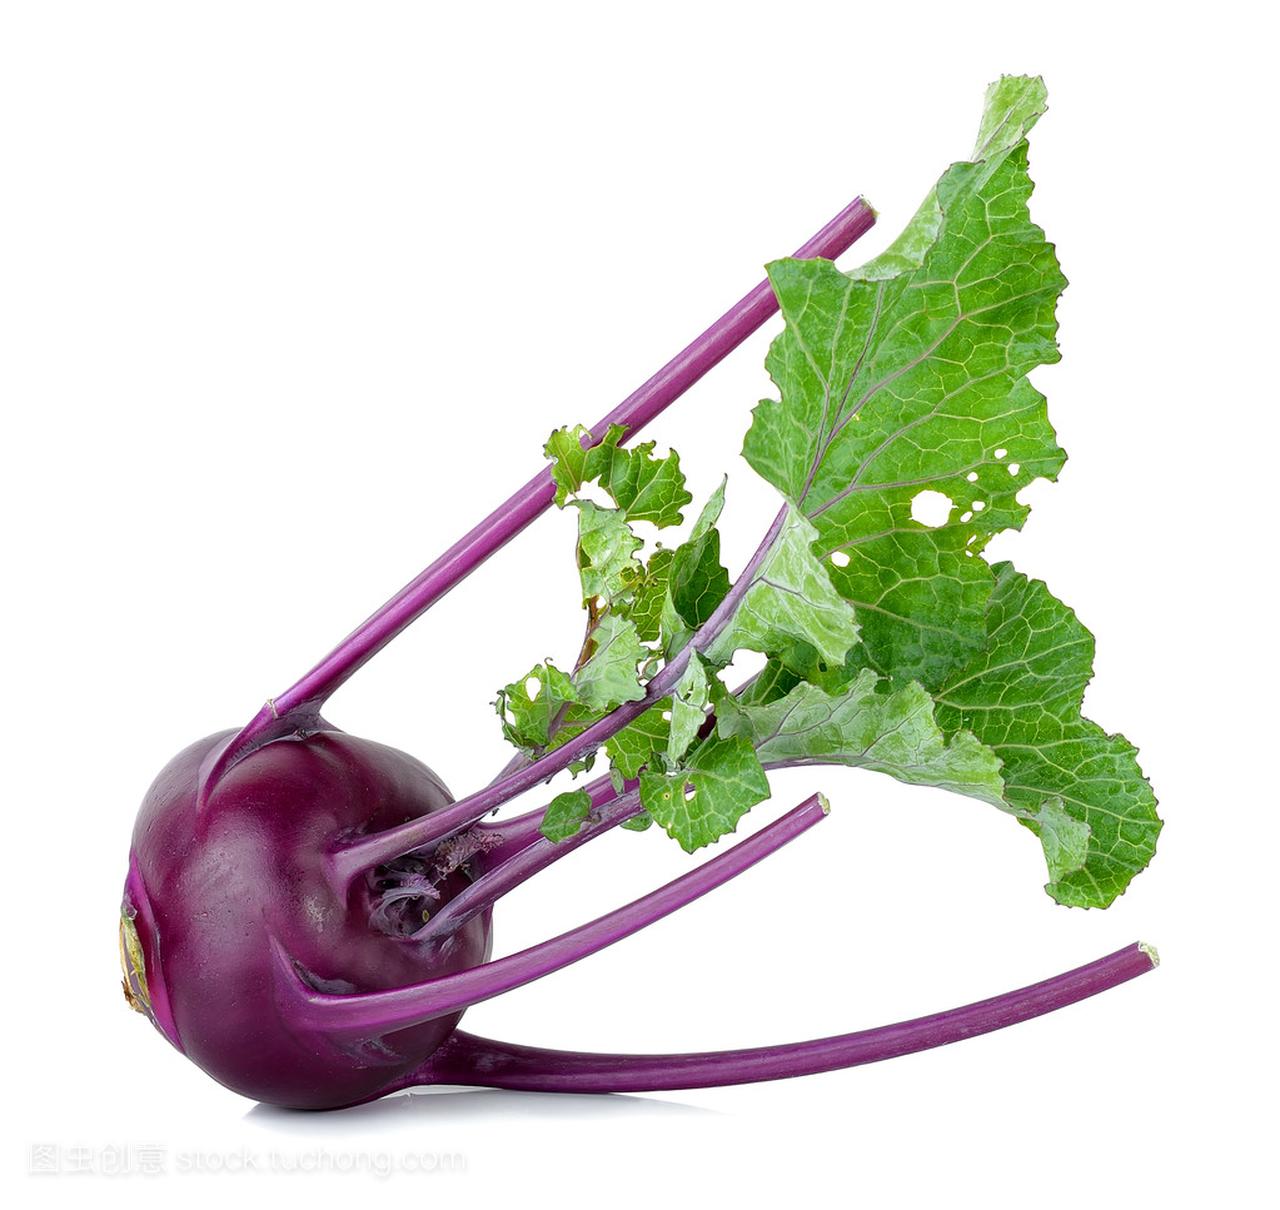 珍しい野菜作り 紫色の水菜「紅法師」収穫できました。サラダで楽しめます。 - farm andante 美味しい野菜とふれあい菜園